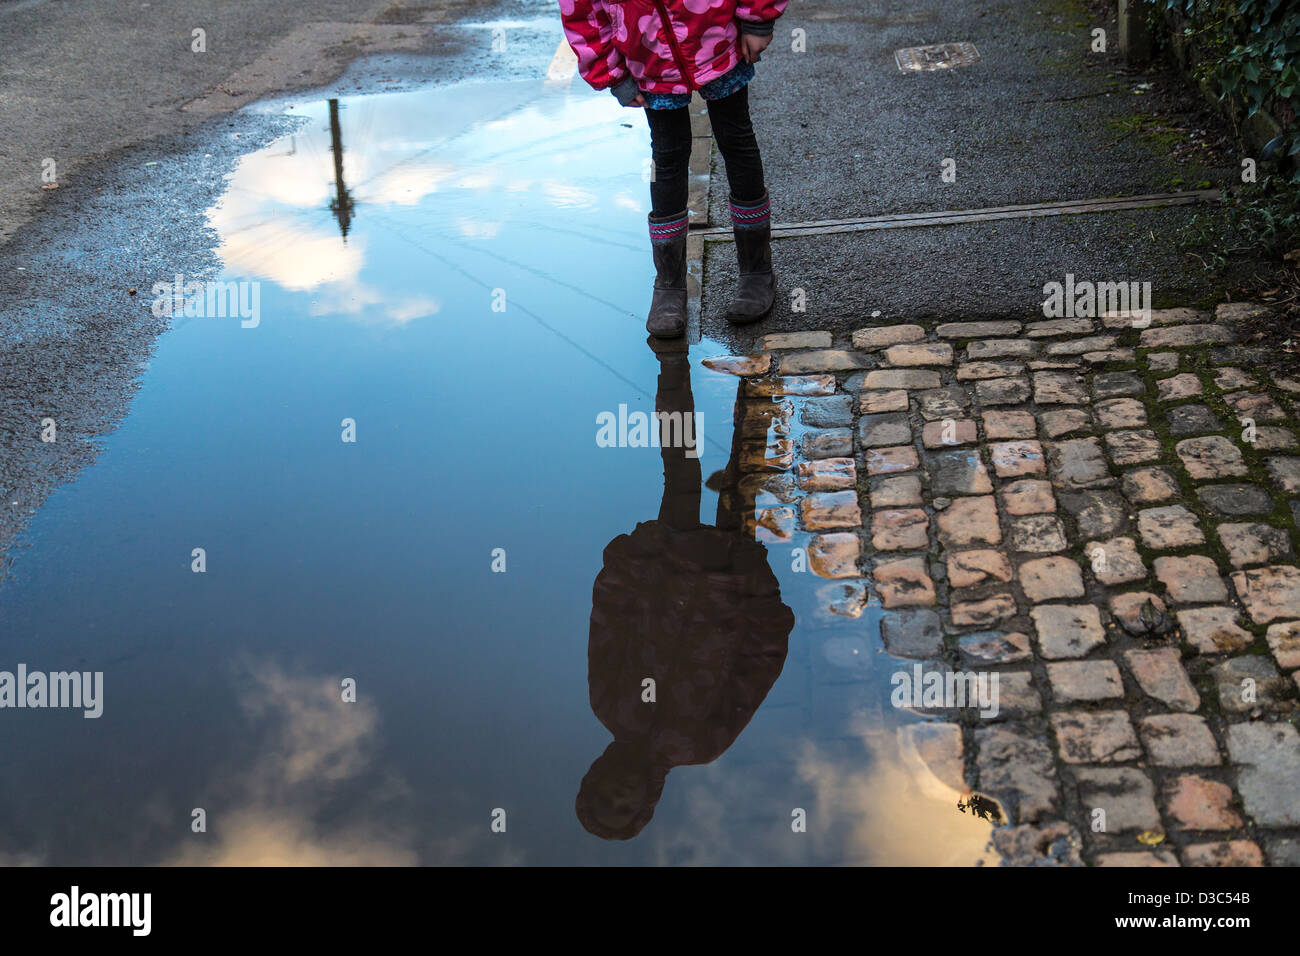 Fille regarde son reflet dans une flaque d'eau Banque D'Images